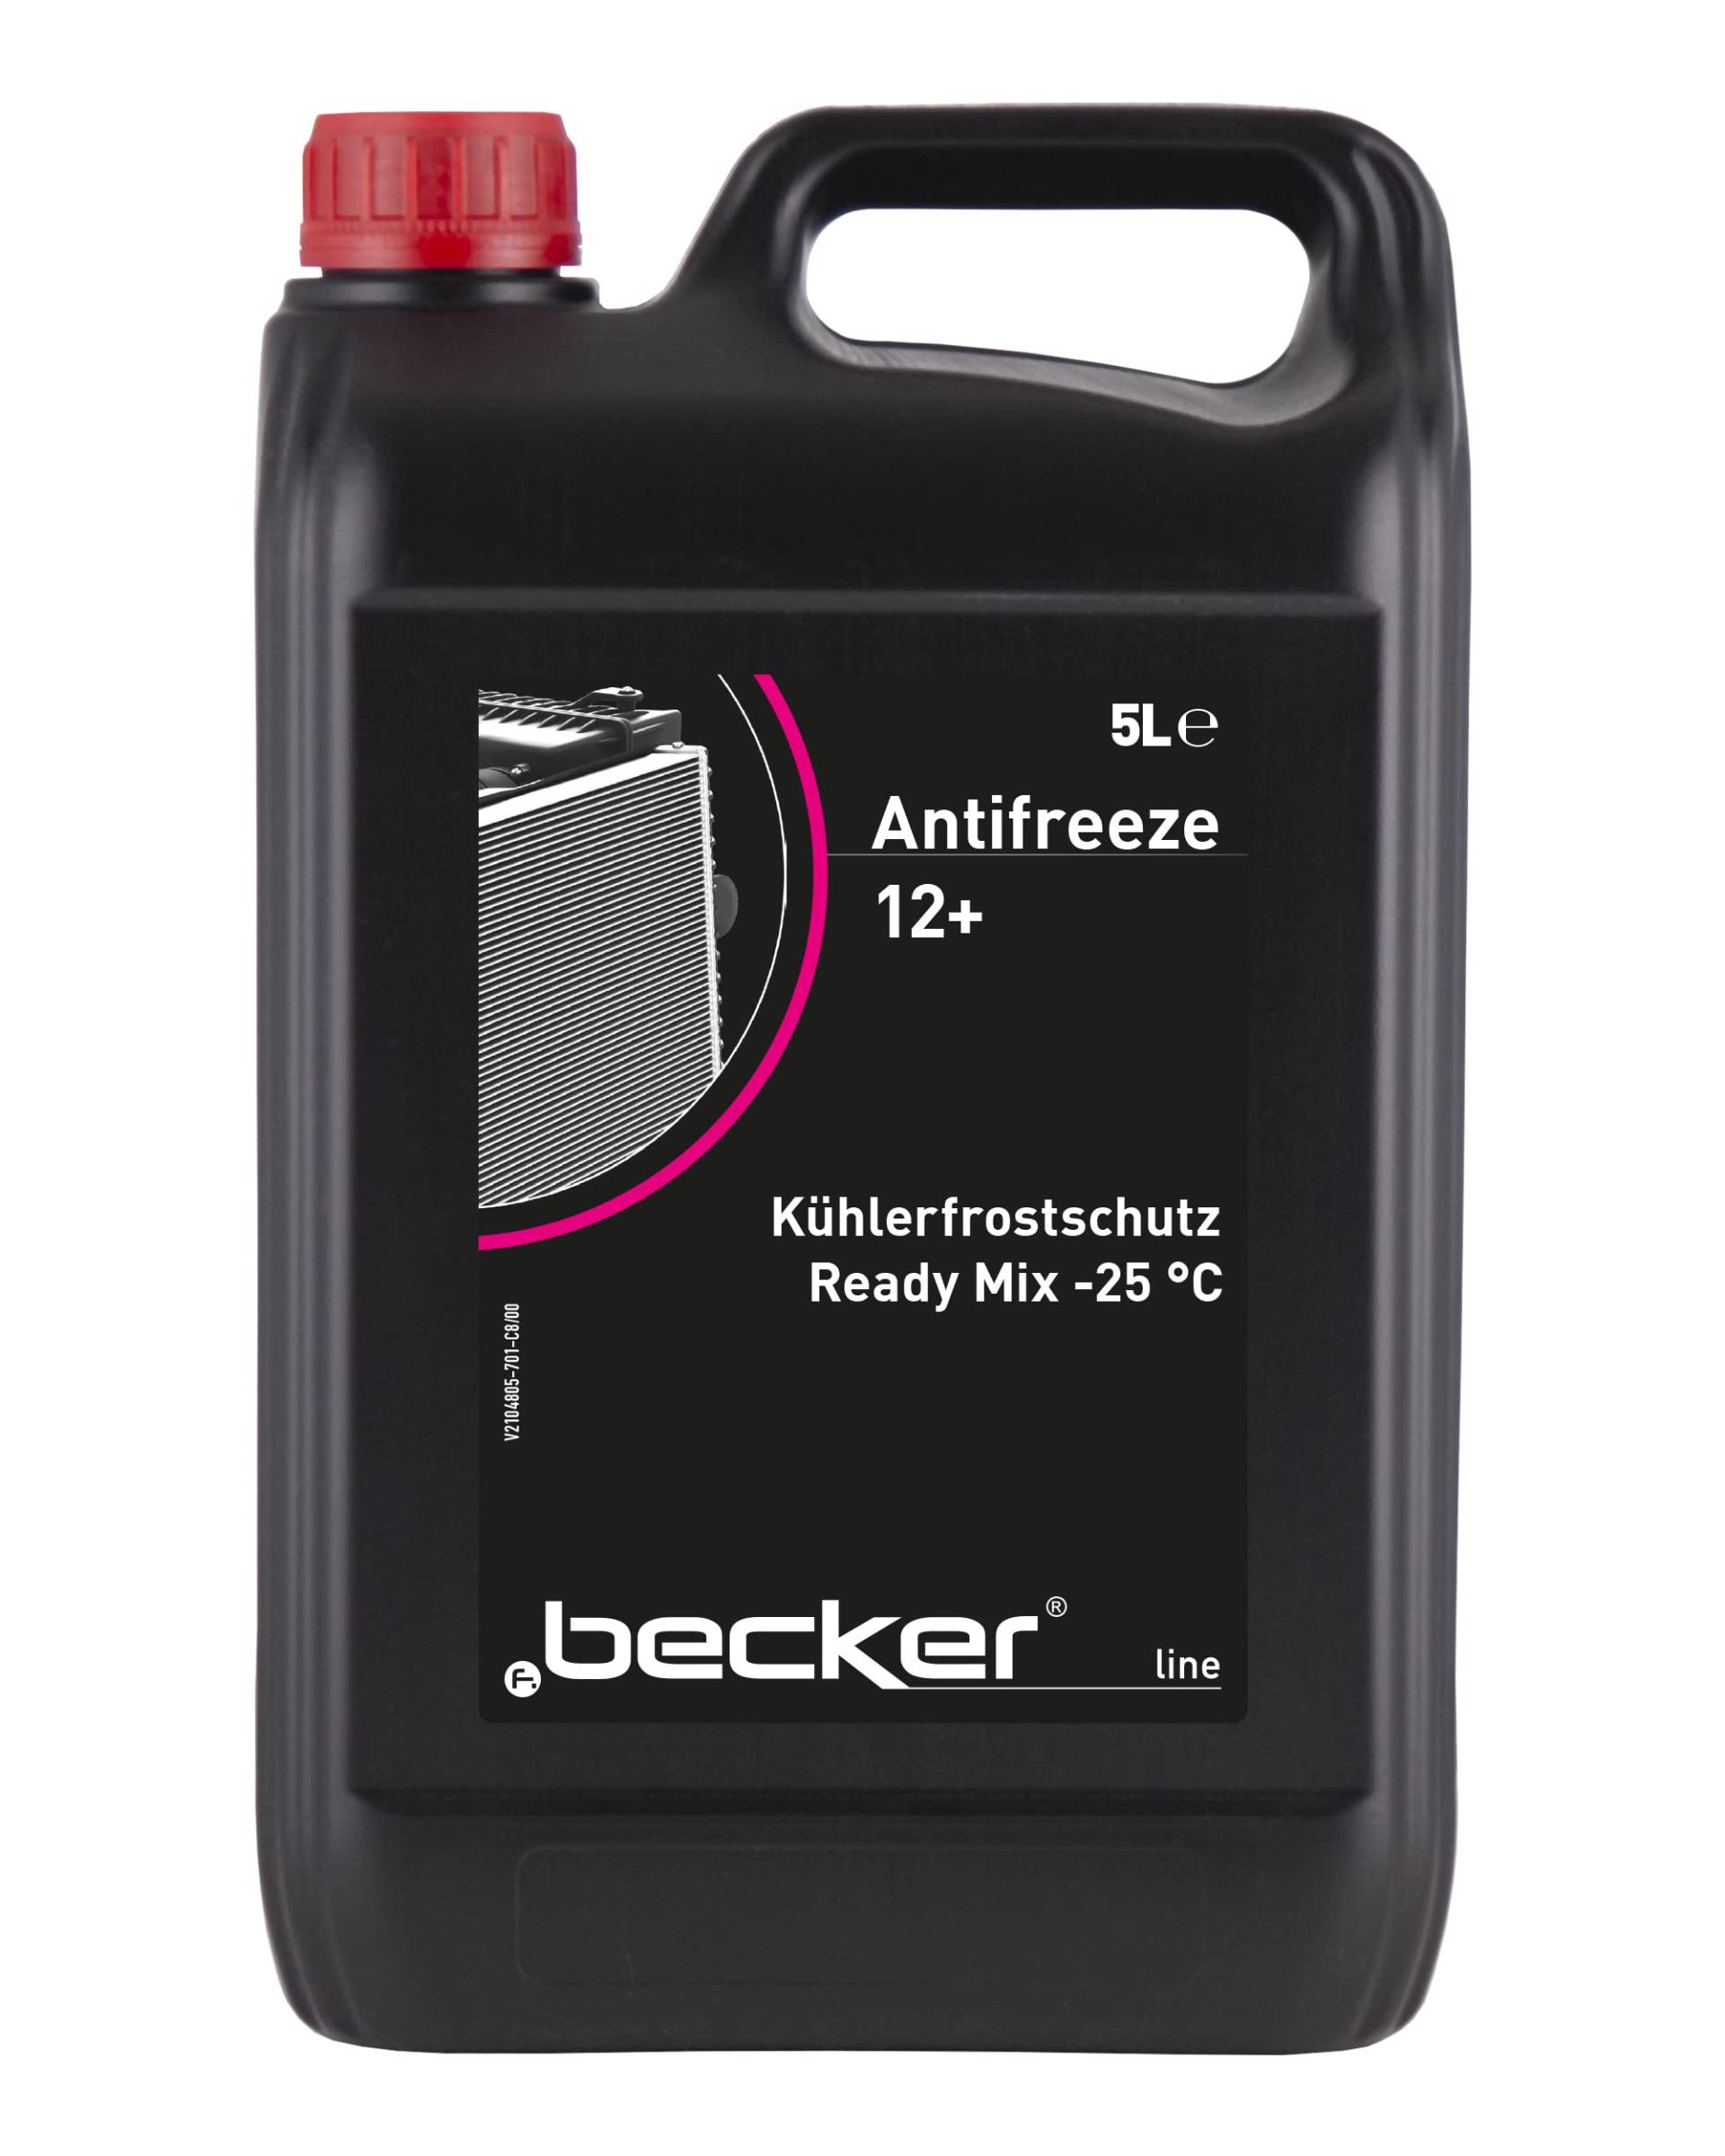 f.becker_line Antifreeze 12+ Kühlerfrostschutz Ready Mix - bis -25°C I 5 Liter - Frostschutz Kühlflüssigkeit Kühlerfrostschutzfertiggemisch I 5L von f.becker_line